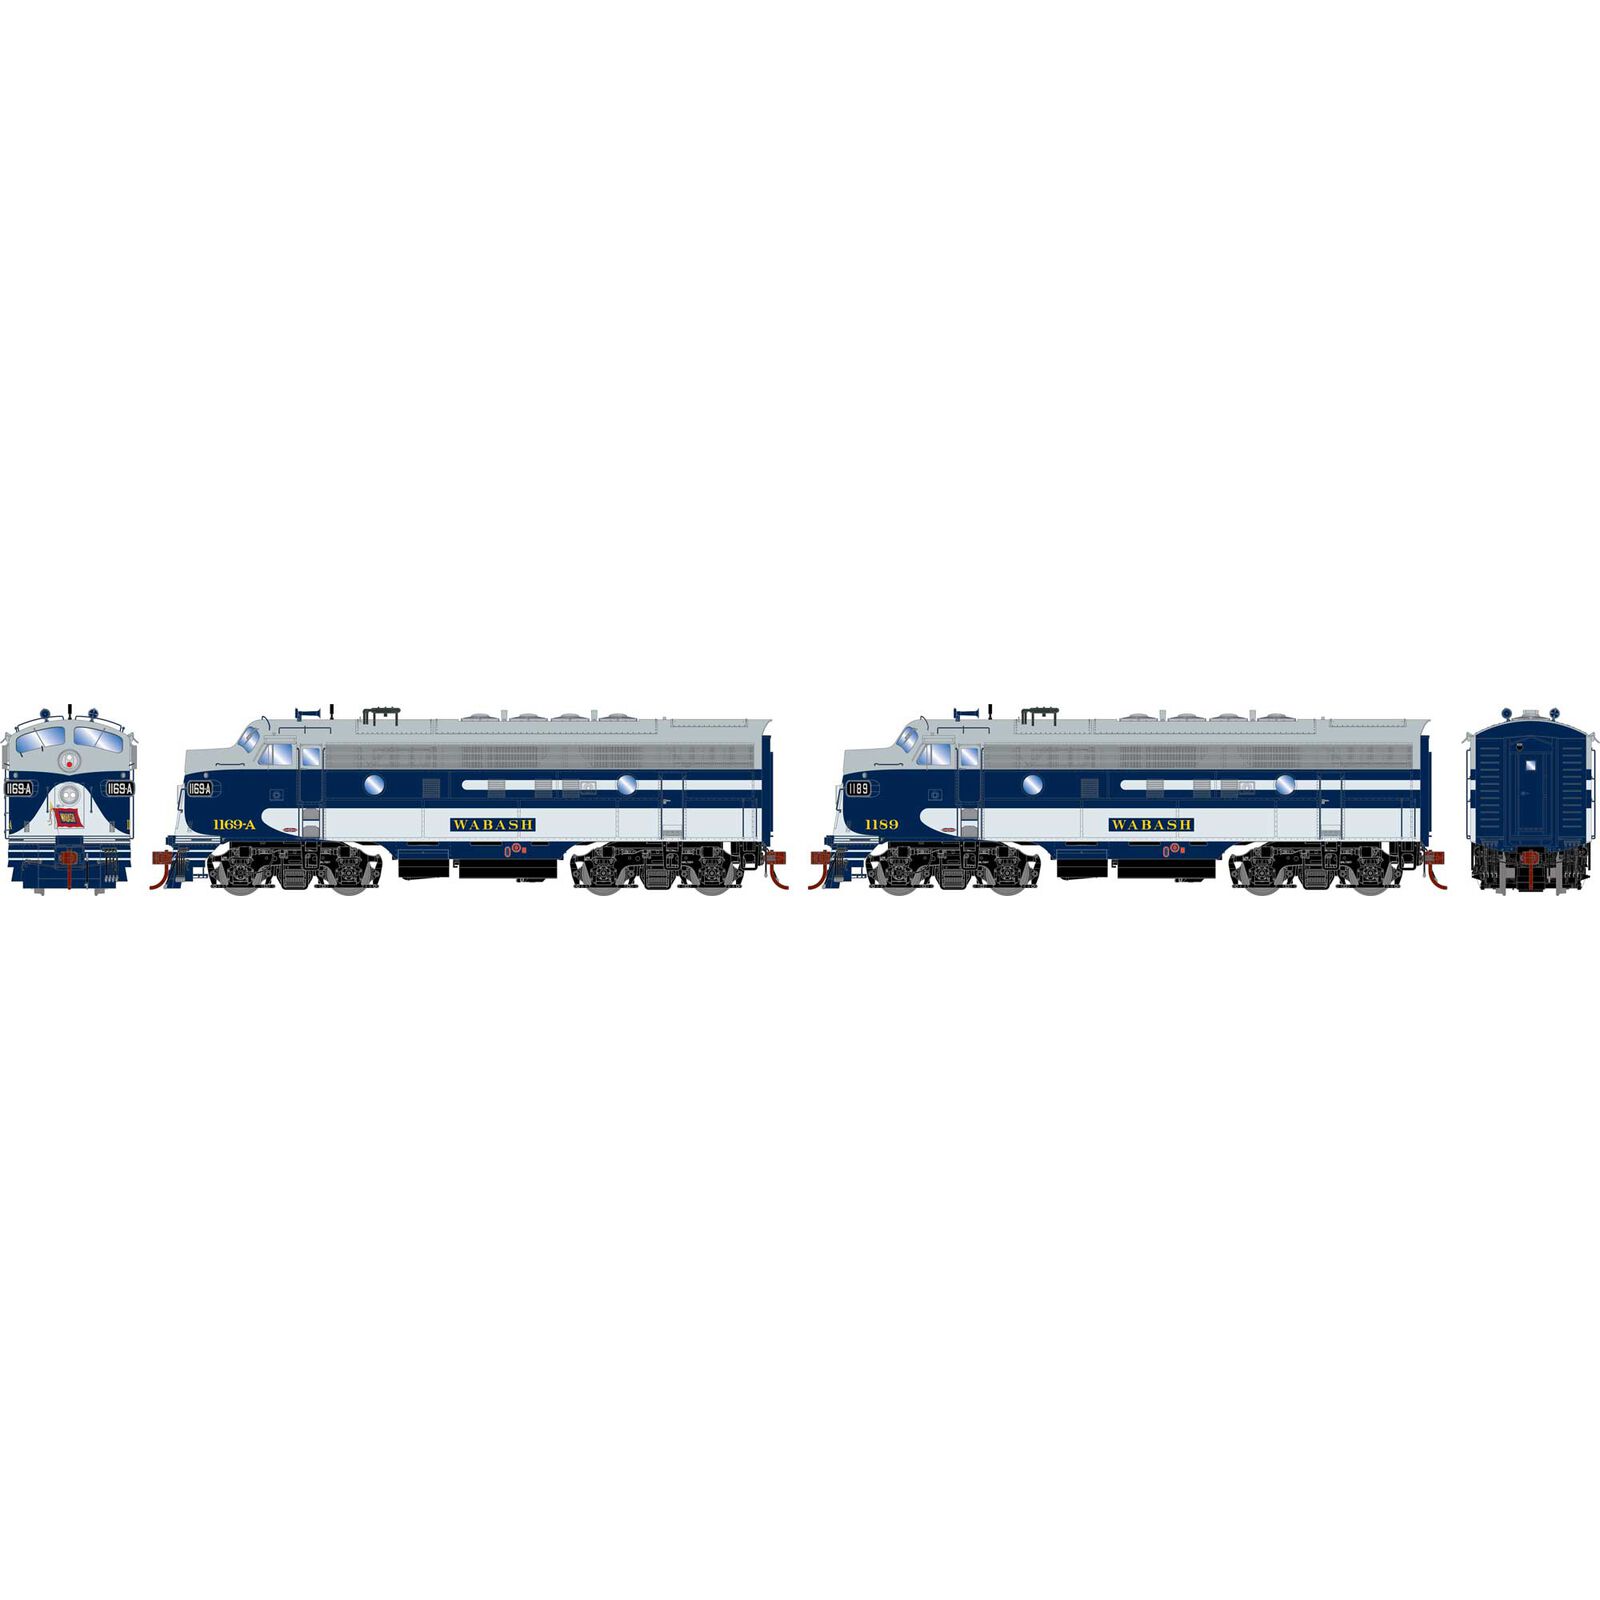 HO F7A / F7A Locomotive Set with DCC & Sound, WAB #1169-A, #1189